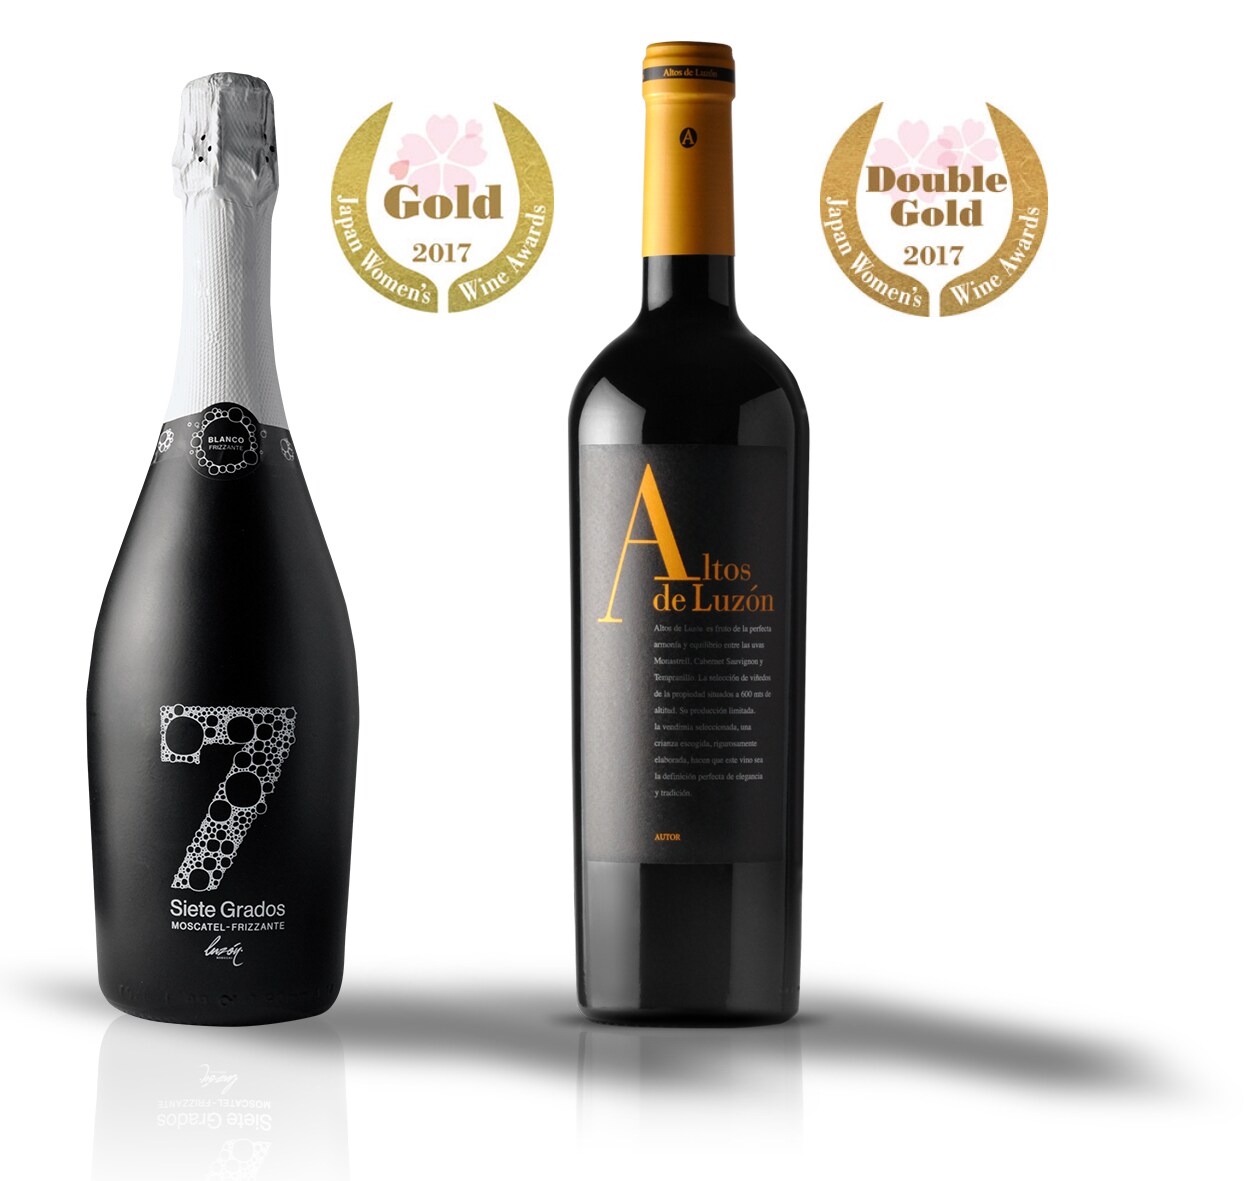 Altos de Luzón 2012 y Siete Grados, premiados por el jurado femenino en el concurso intenacional de vinos de Japón